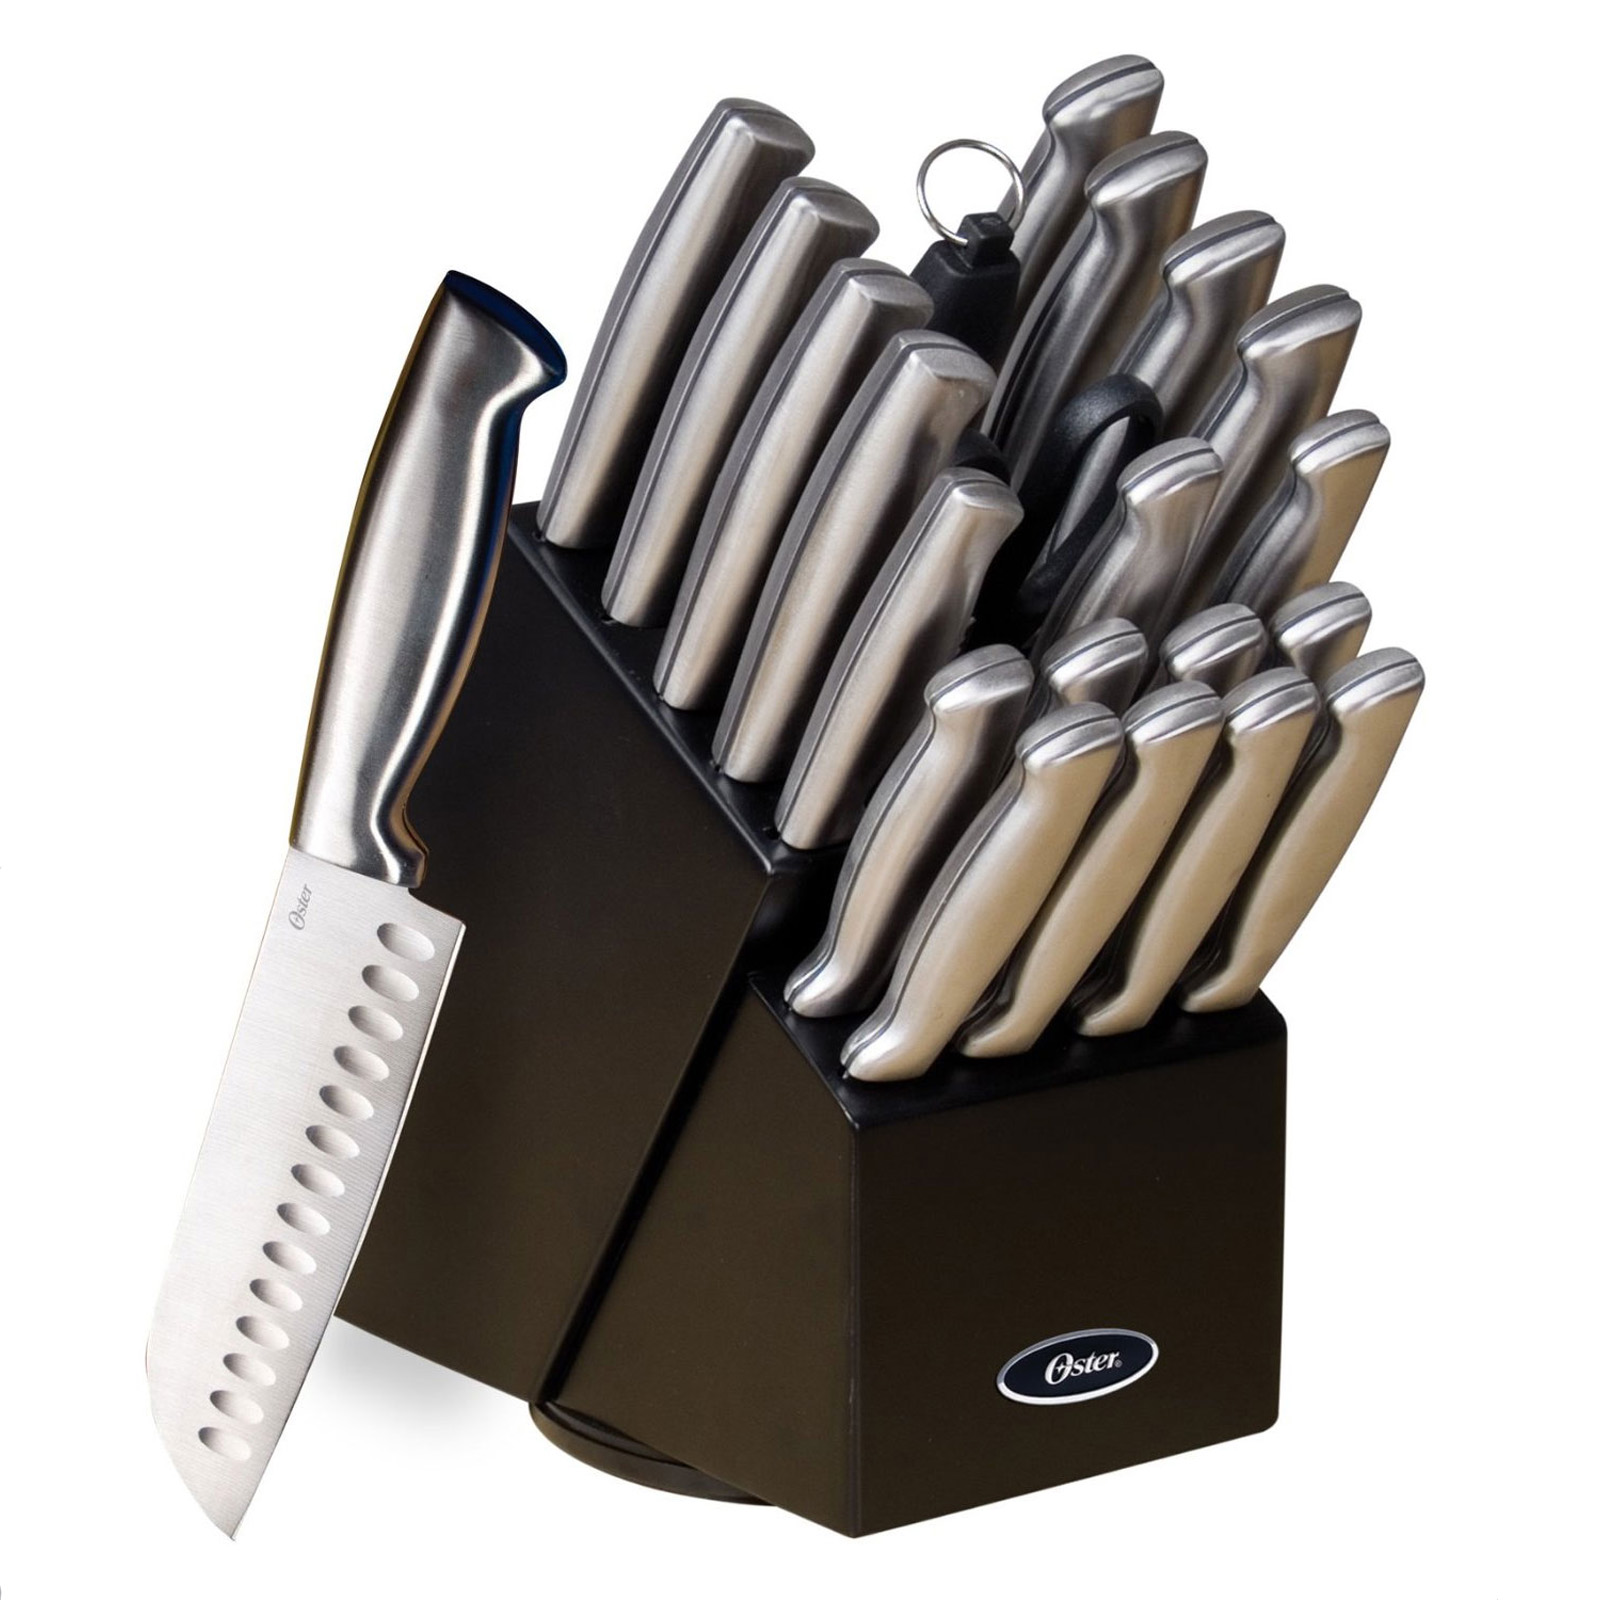 Oster 22pc. Stainless Steel Baldwyn Knives Cutlery Block Set